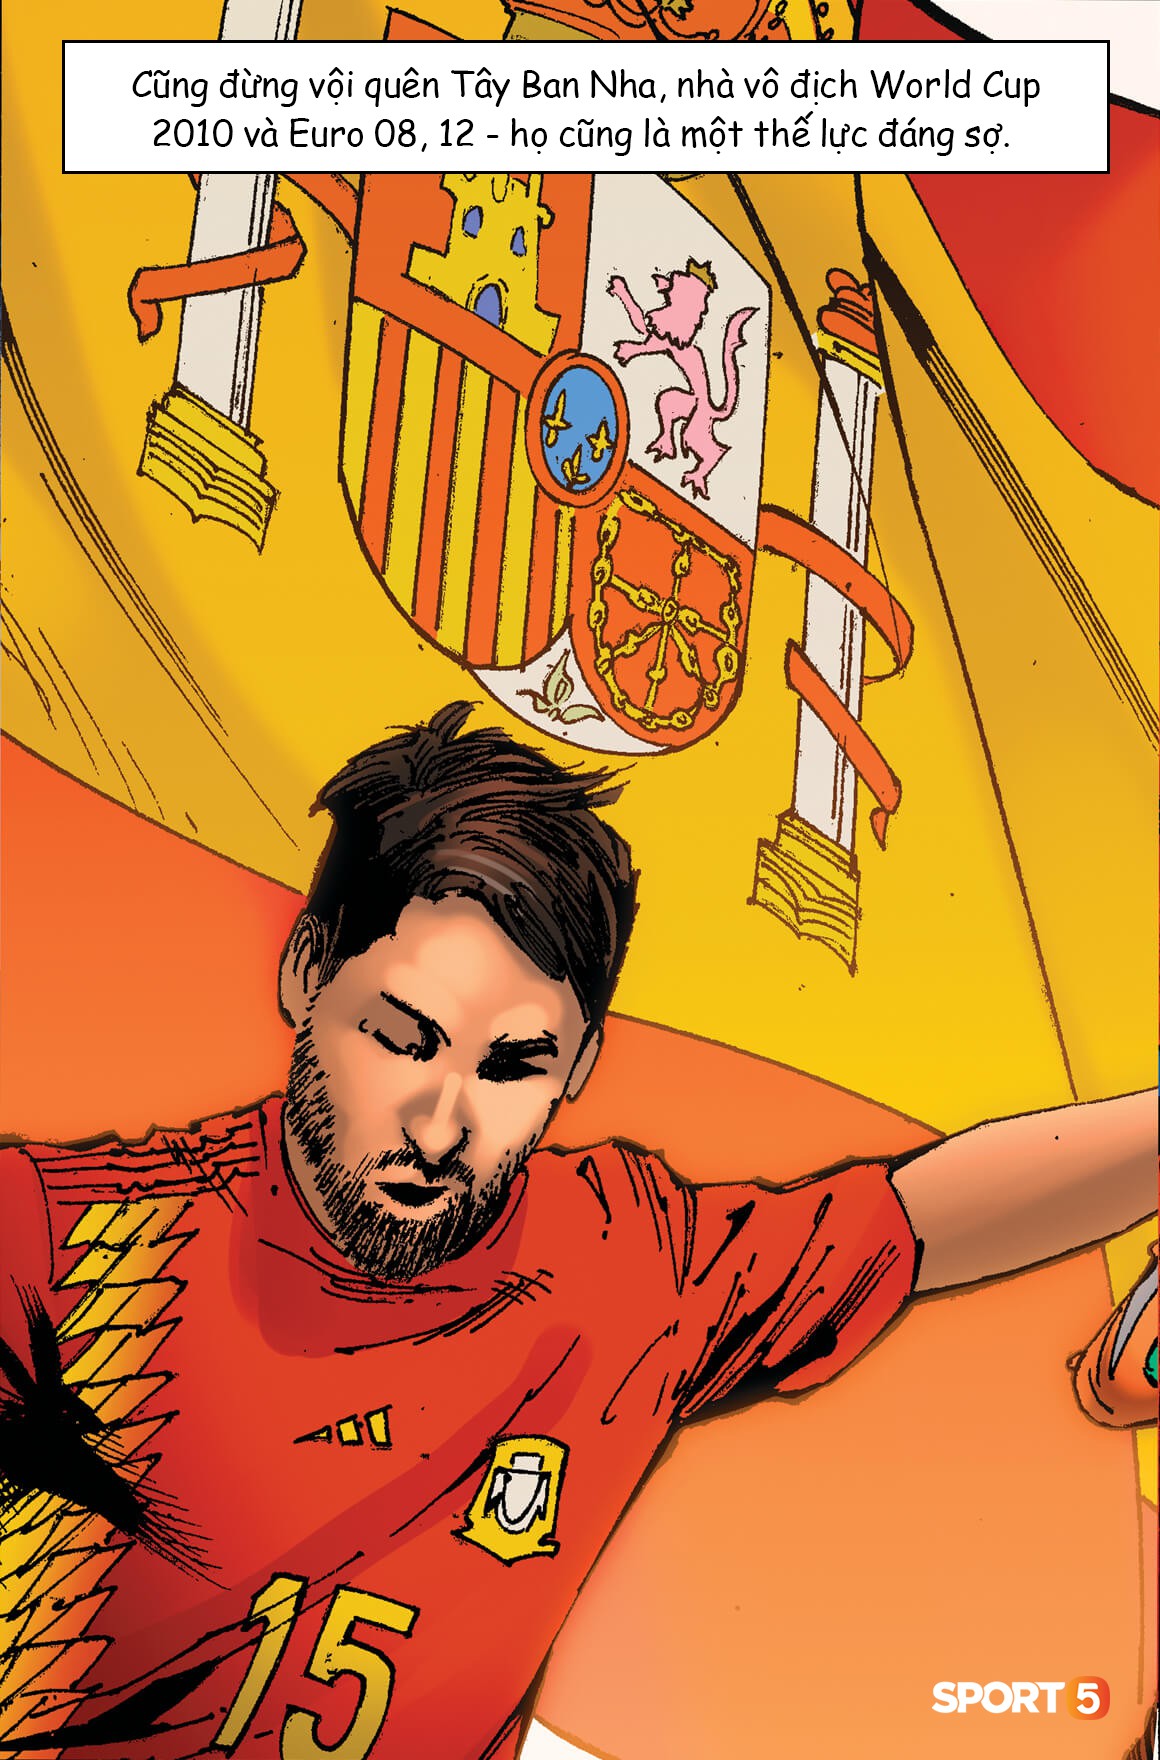 Truyện World Cup phong cách Marvel: Những kẻ thách thức ngôi vương (chương 4) - Ảnh 4.